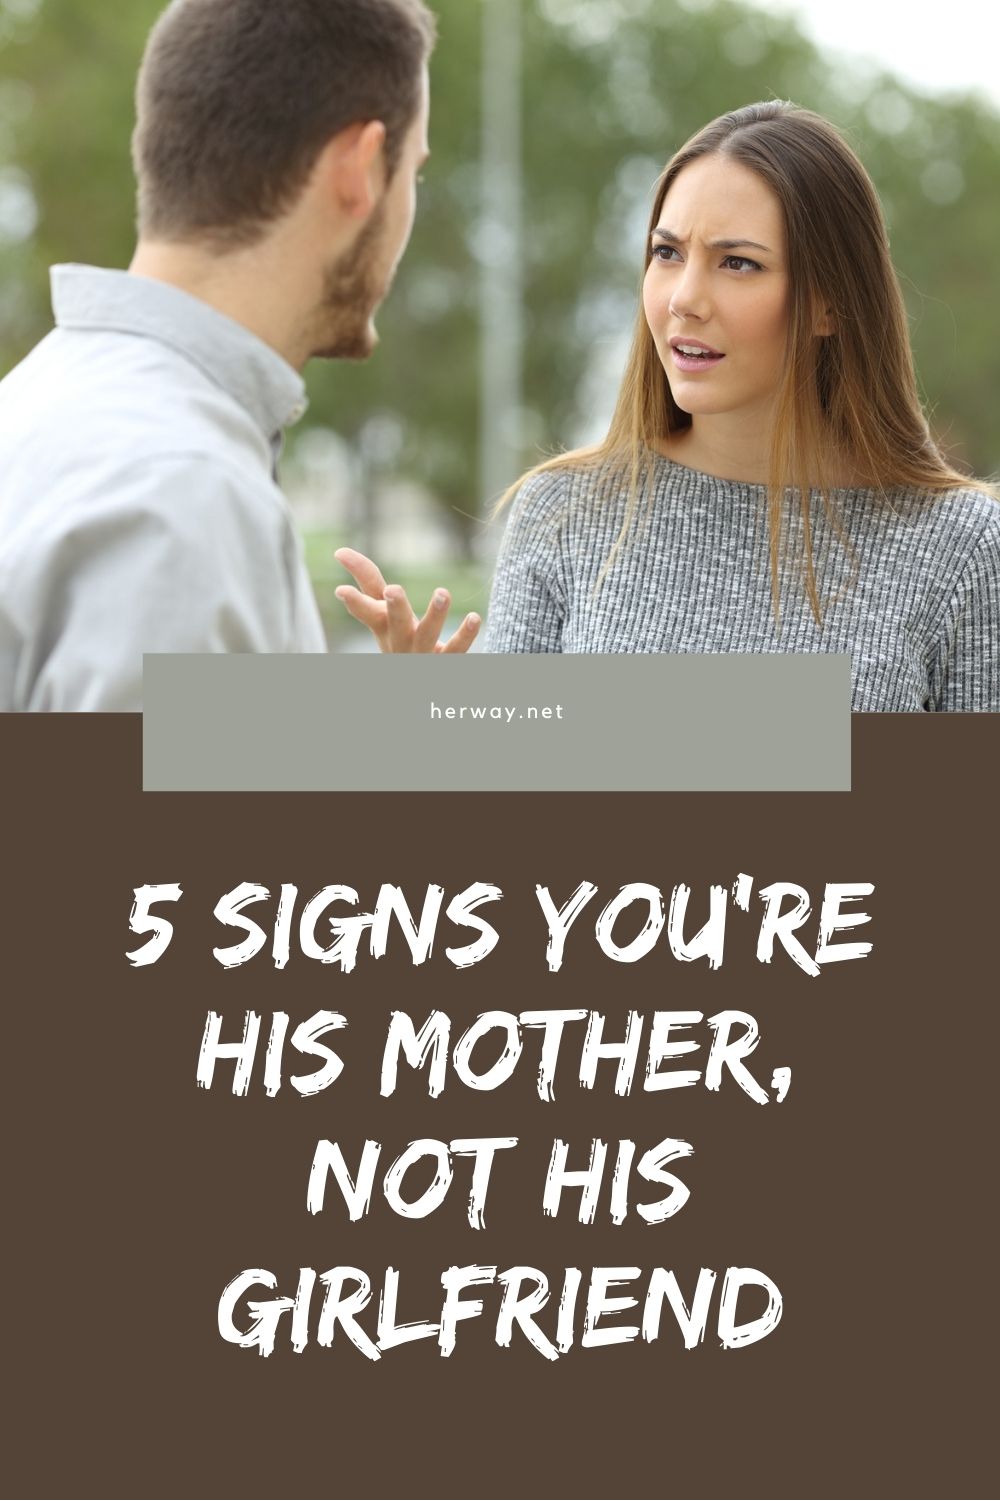 5 segni che sei sua madre, non la sua fidanzata